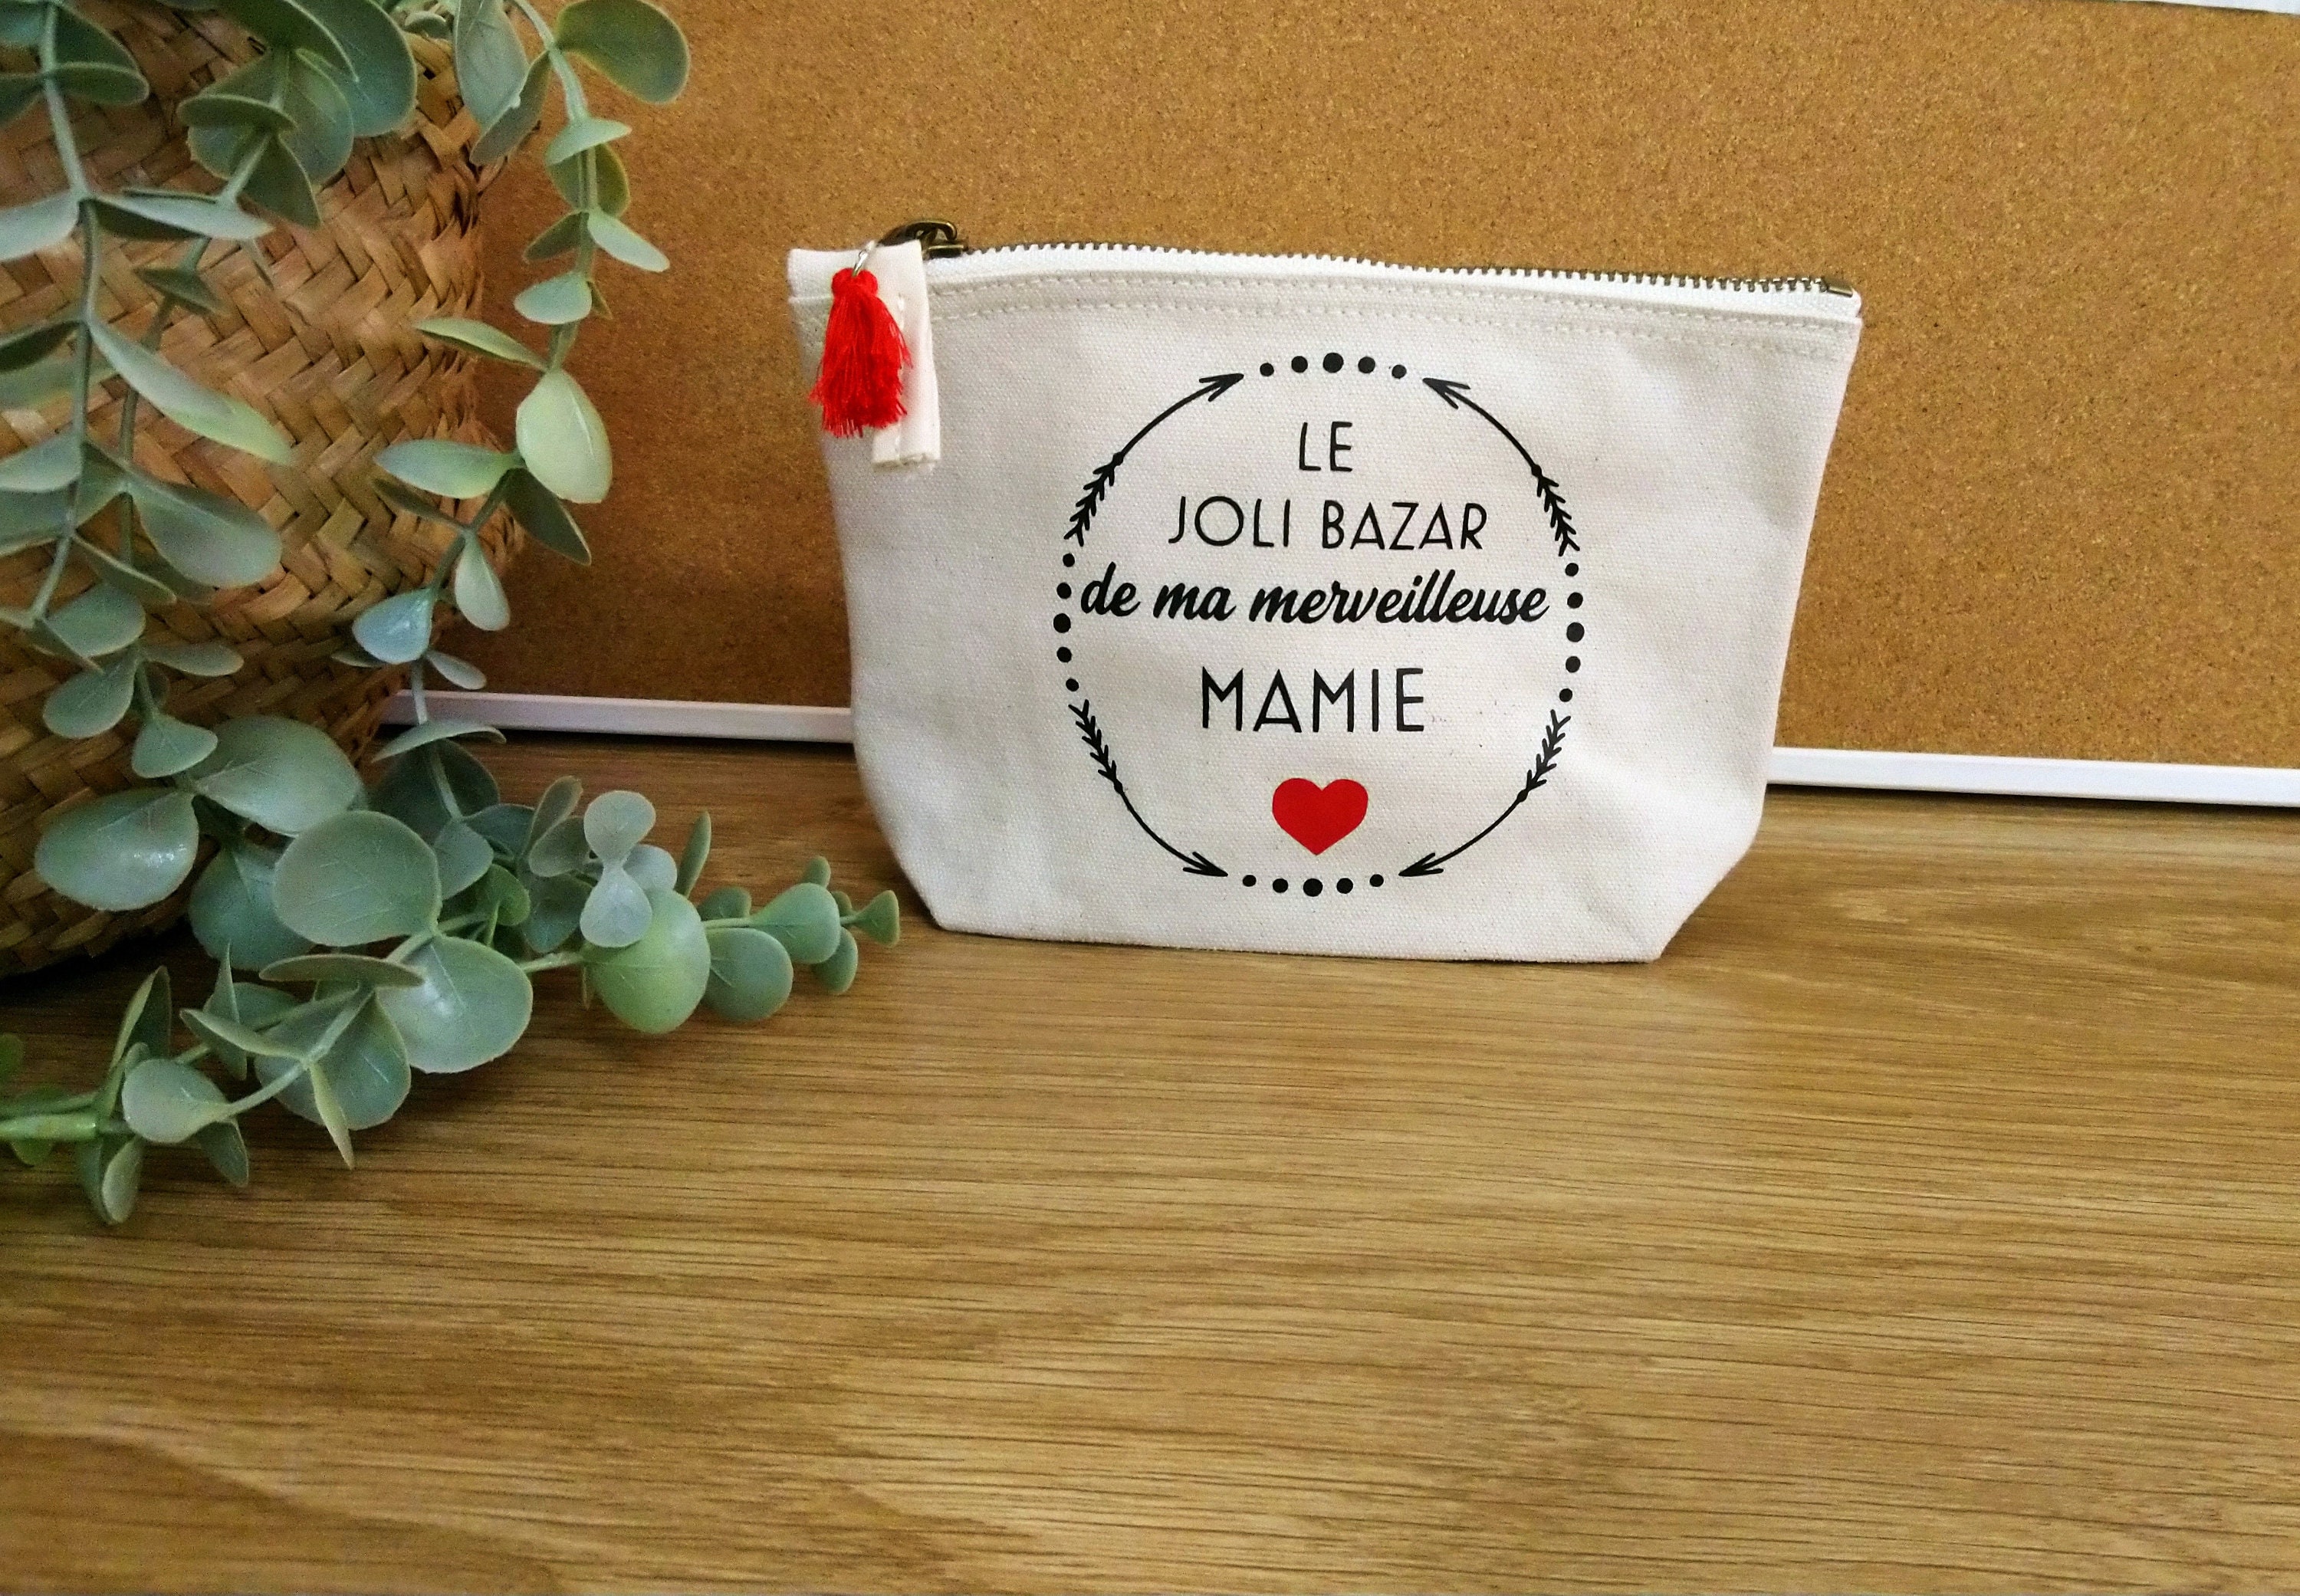 Pochette personnalisable - Le Bazar de Mamie